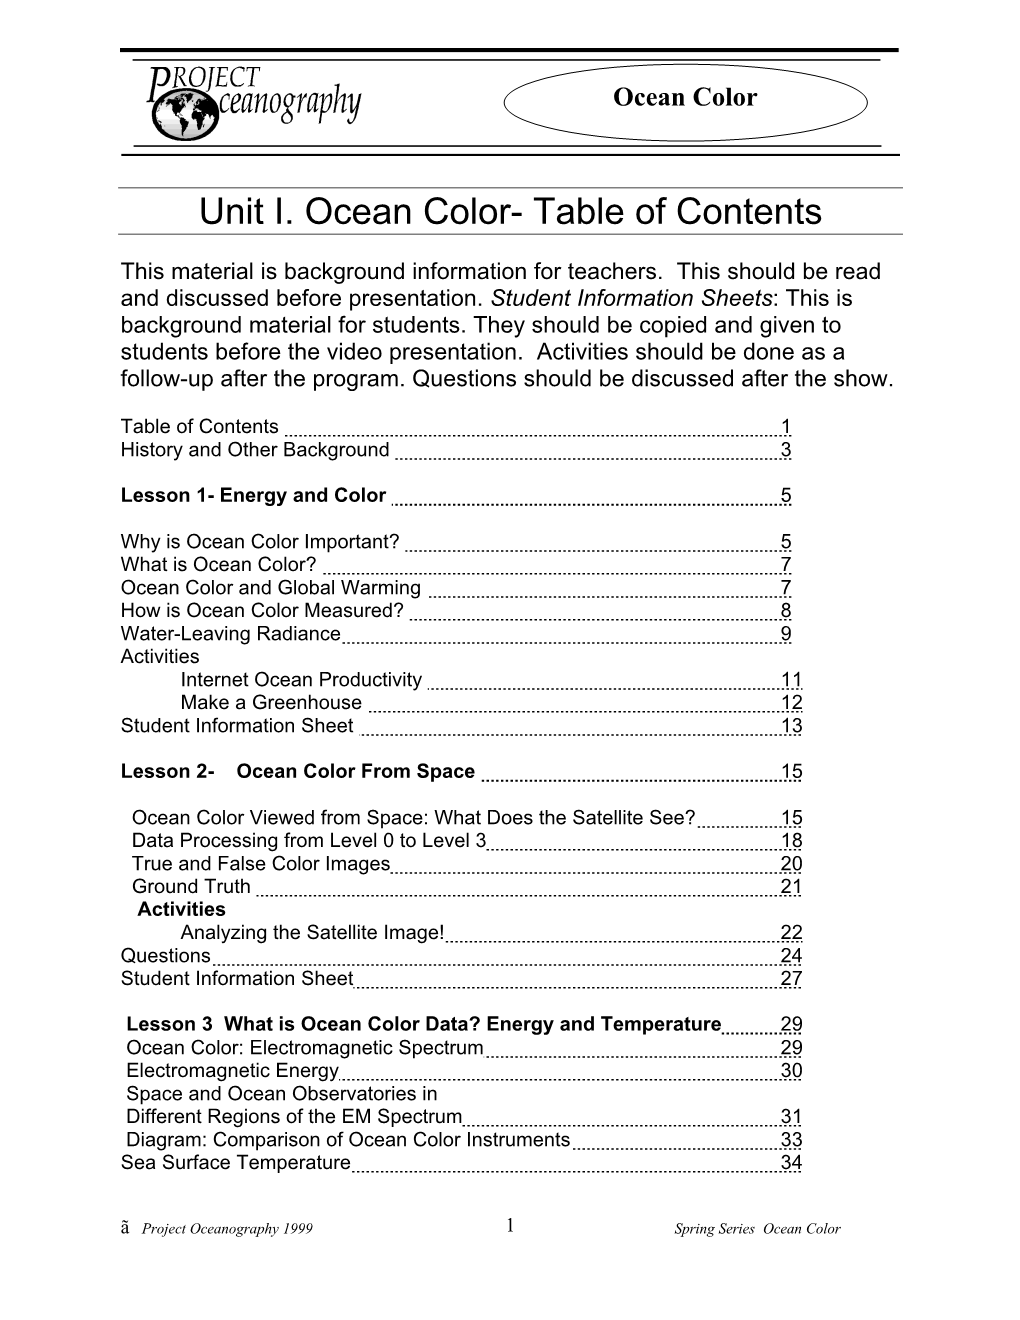 Unit I: Ocean Color